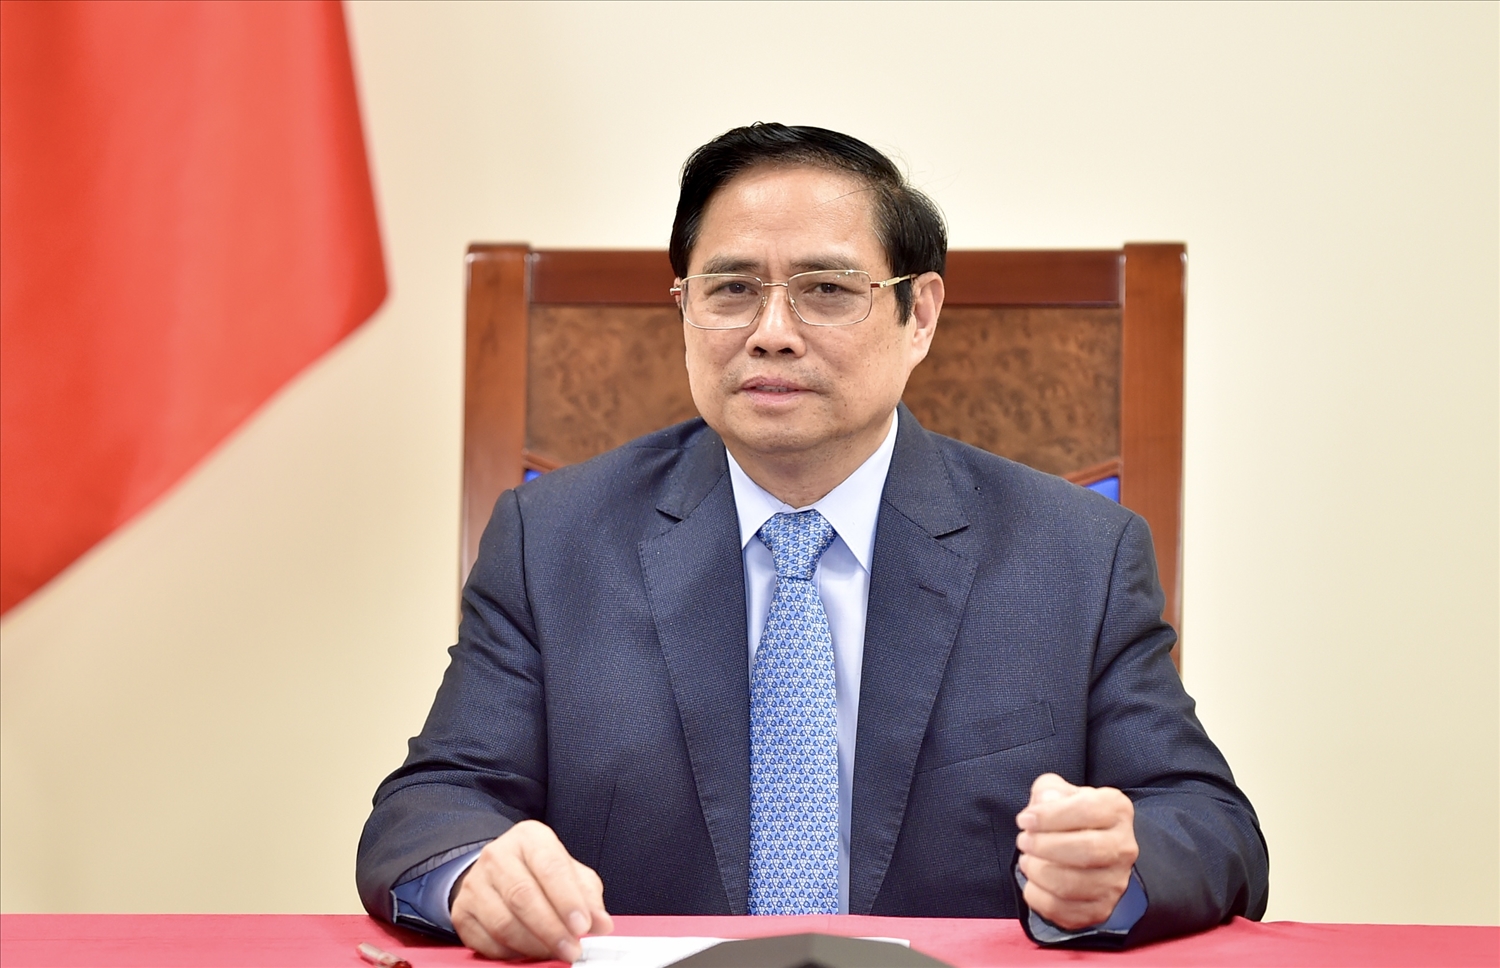 Thủ tướng Chính phủ bày tỏ cảm ơn Công ty Pfizer đã có những đóng góp thiết thực vào quá trình phát triển ngành y tế tại Việt Nam cũng như đã hợp tác tích cực để chuyển giao vaccine cho Việt Nam. Ảnh: VGP/Nhật Bắc